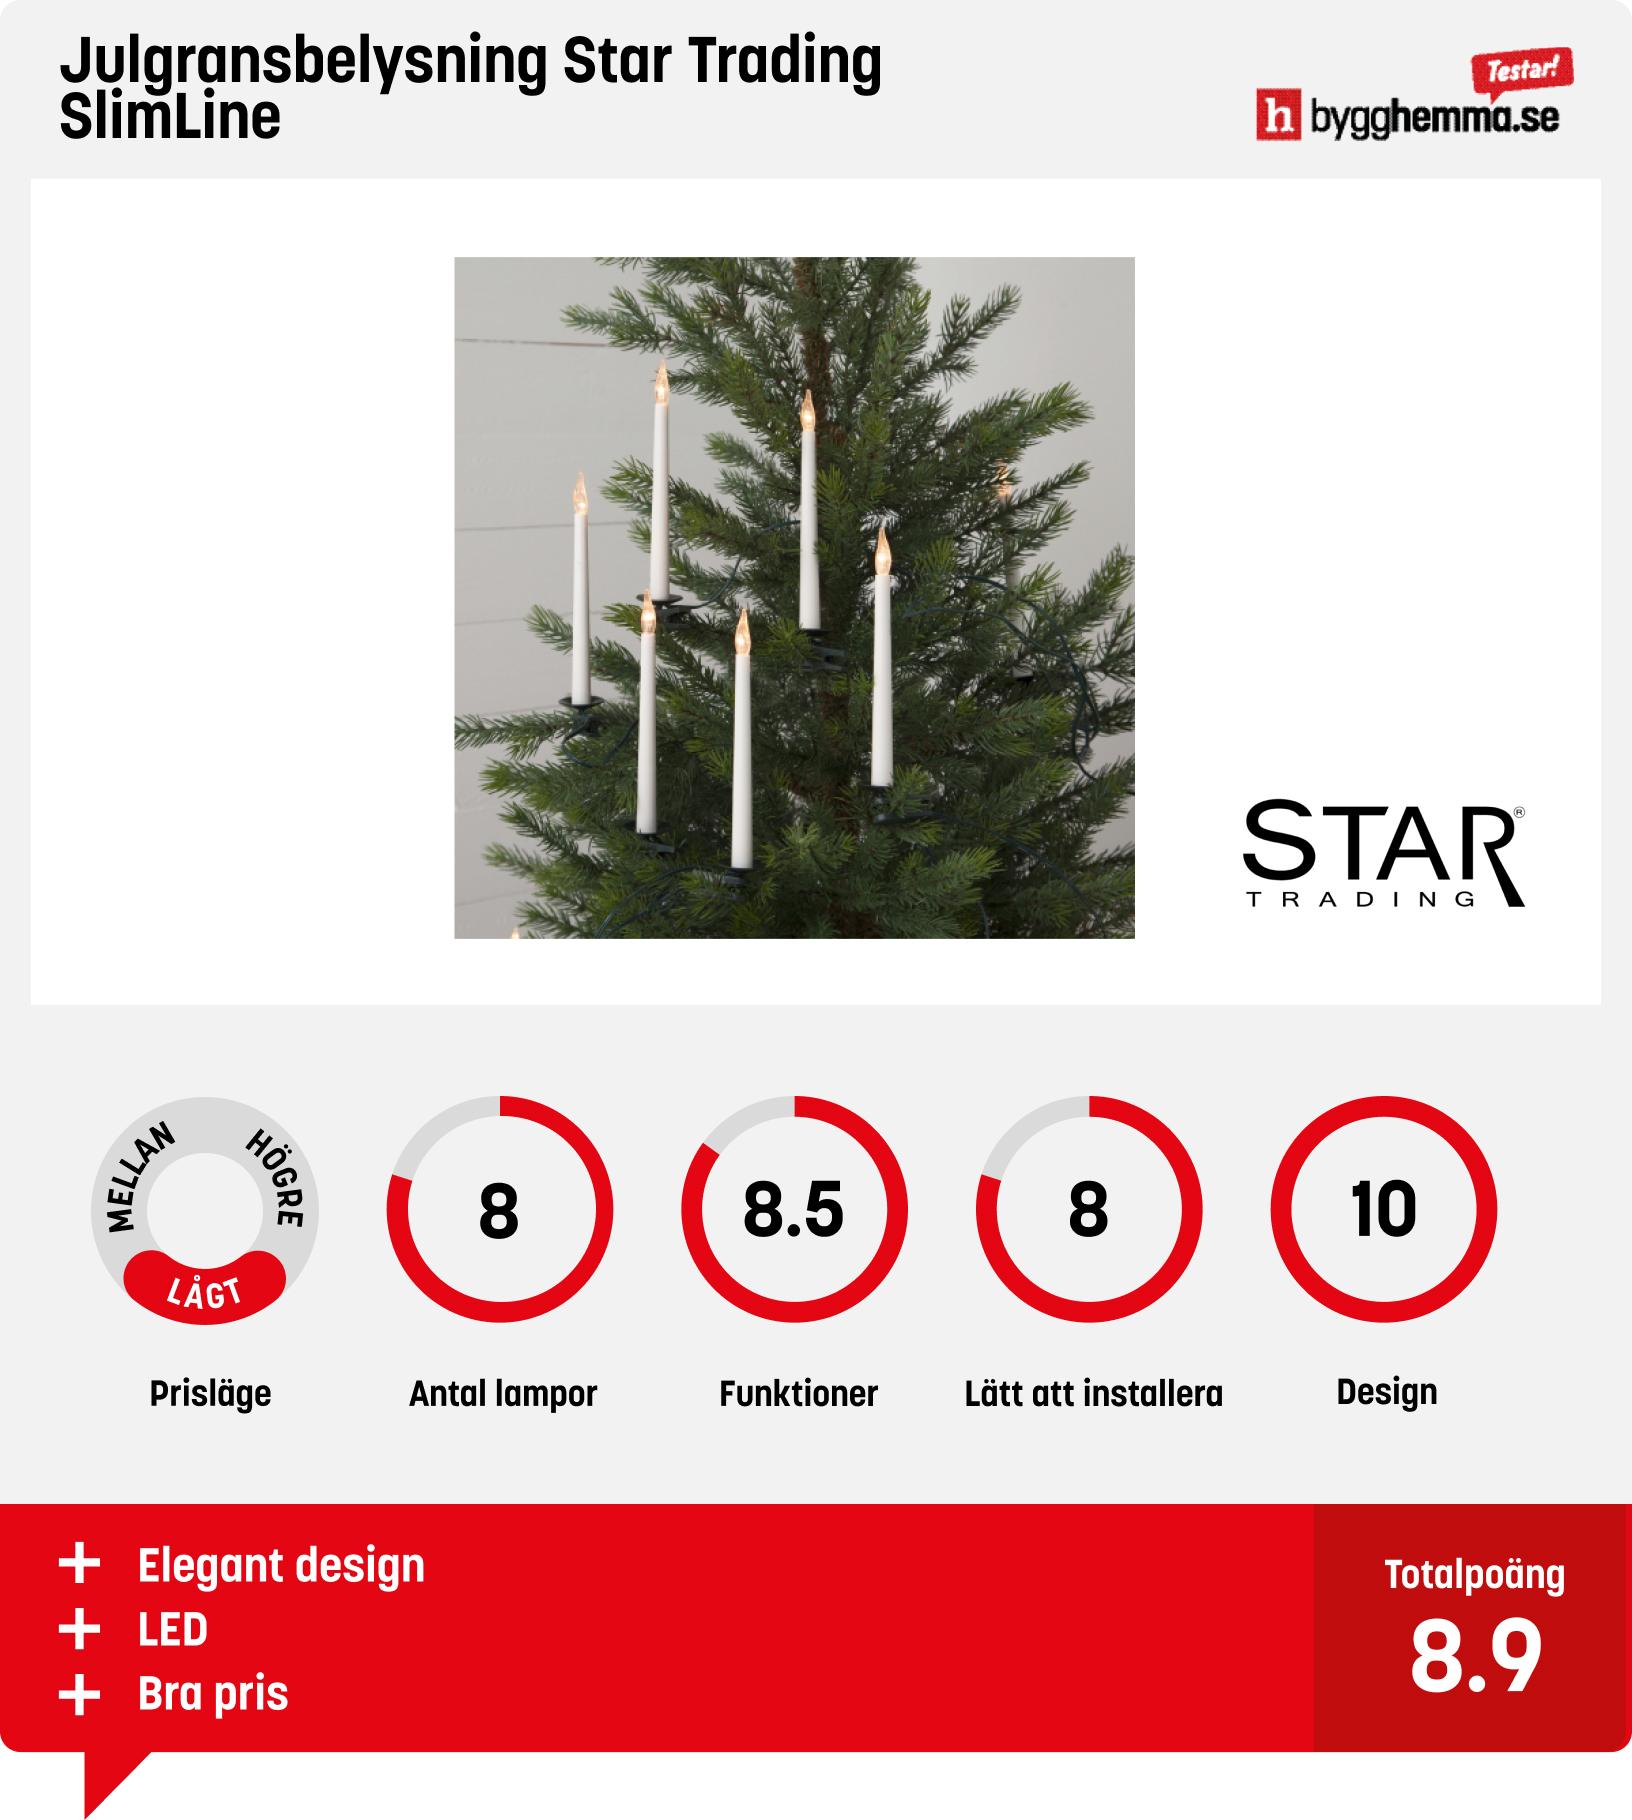 Julgransbelysning bäst i test - Julgransbelysning Star Trading SlimLine